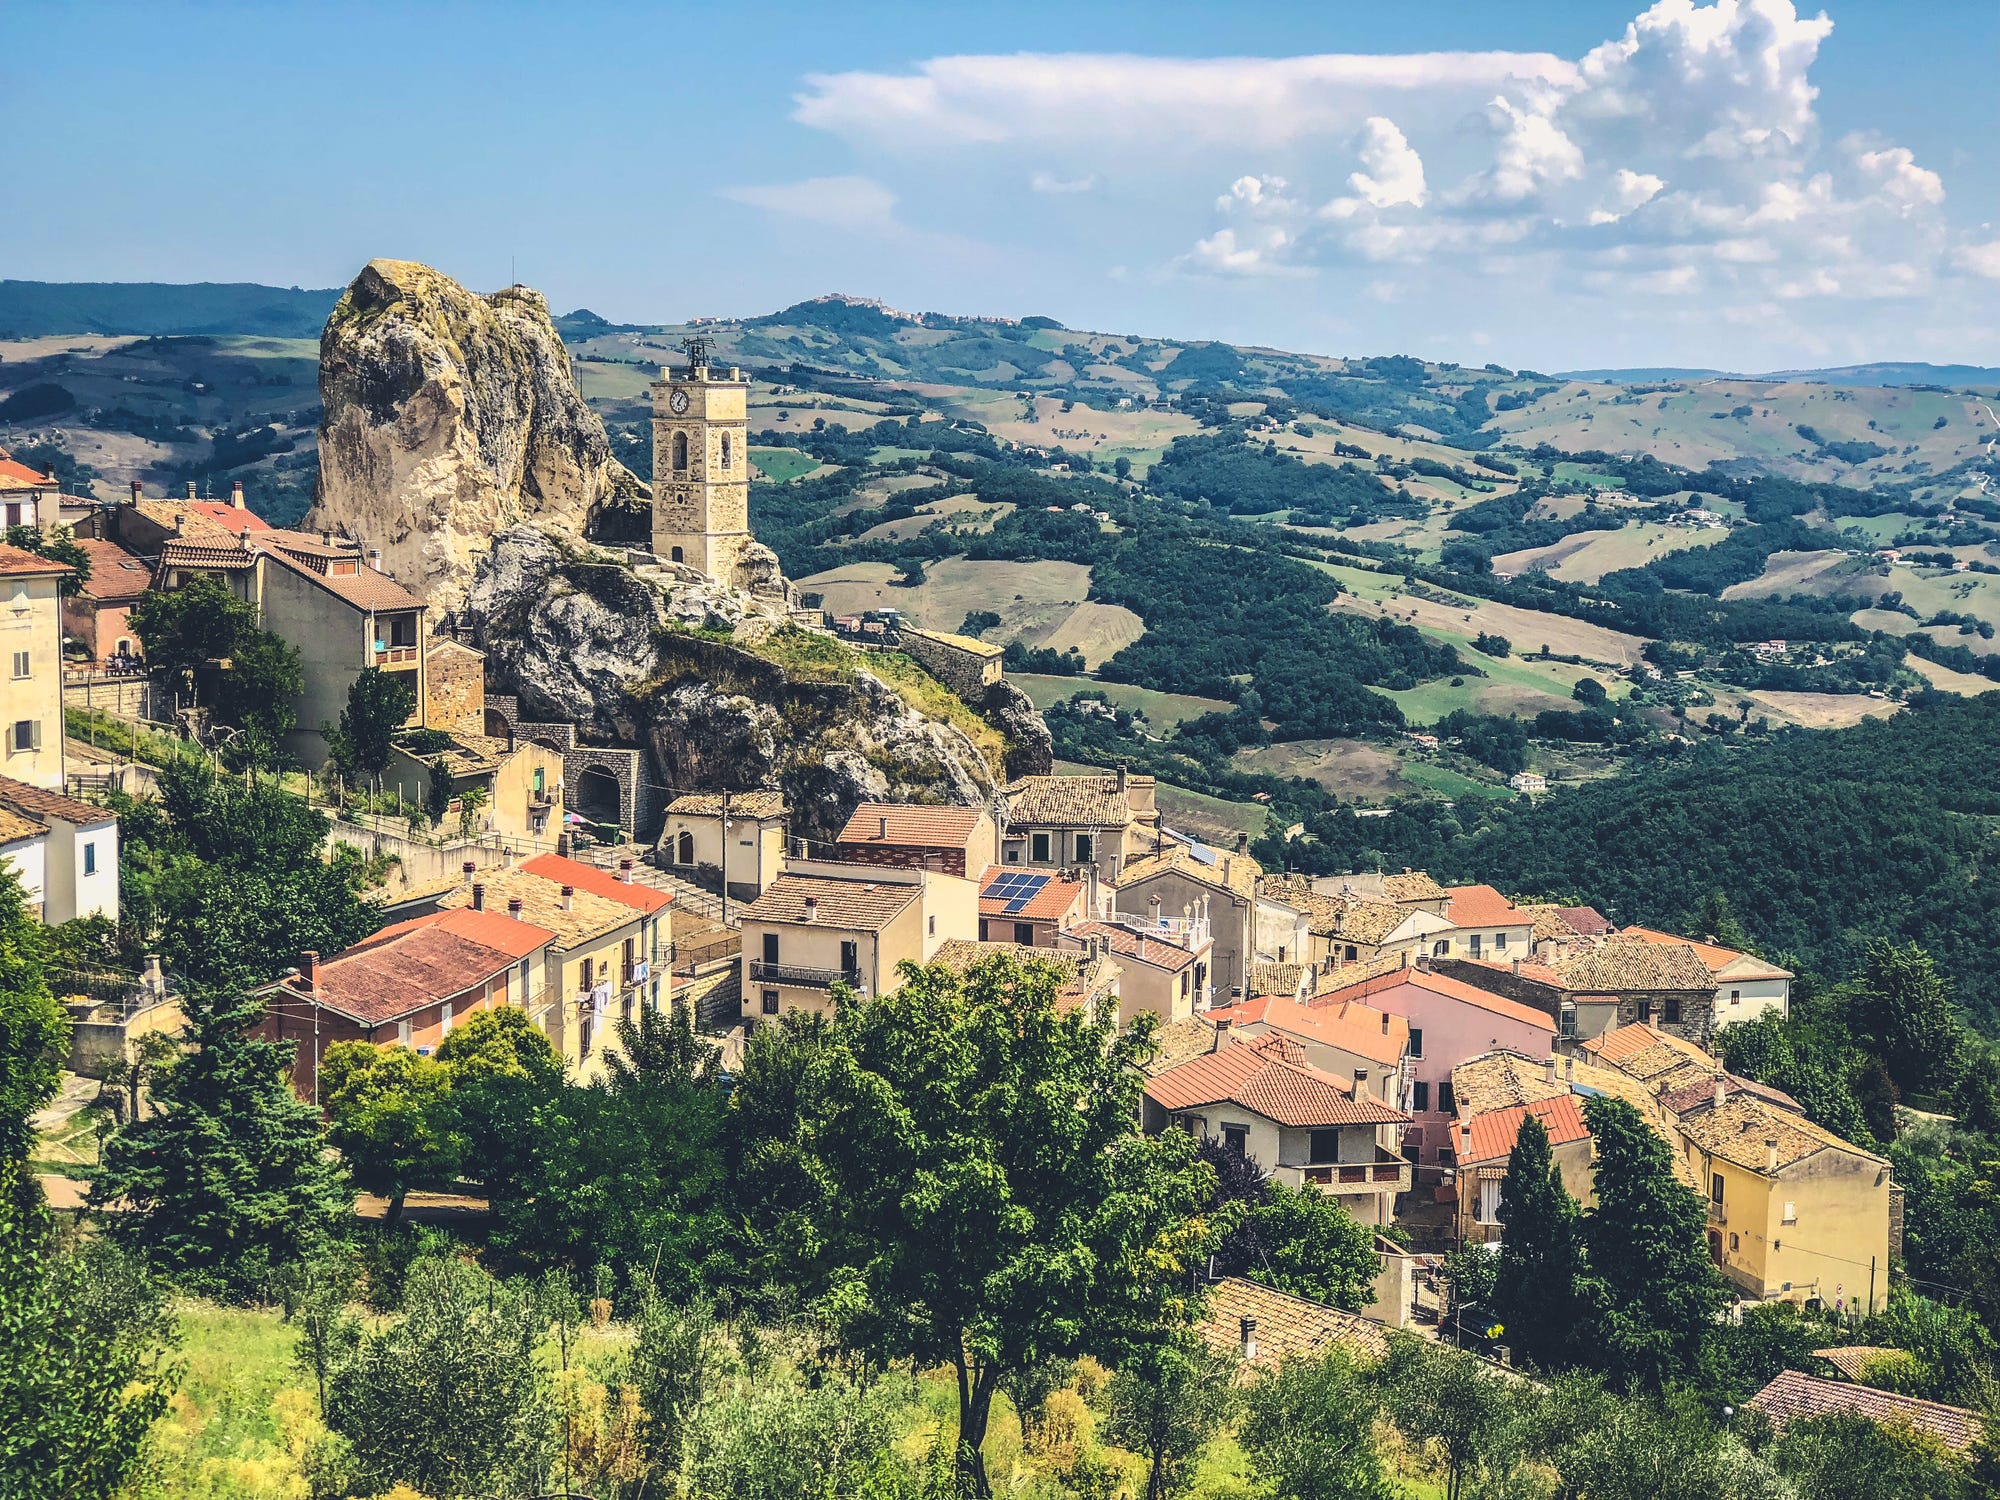 Het Italiaanse dorpje San Giovanni wil meer levendigheid en biedt 40 vakantieweken met gratis overnachtingen aan.